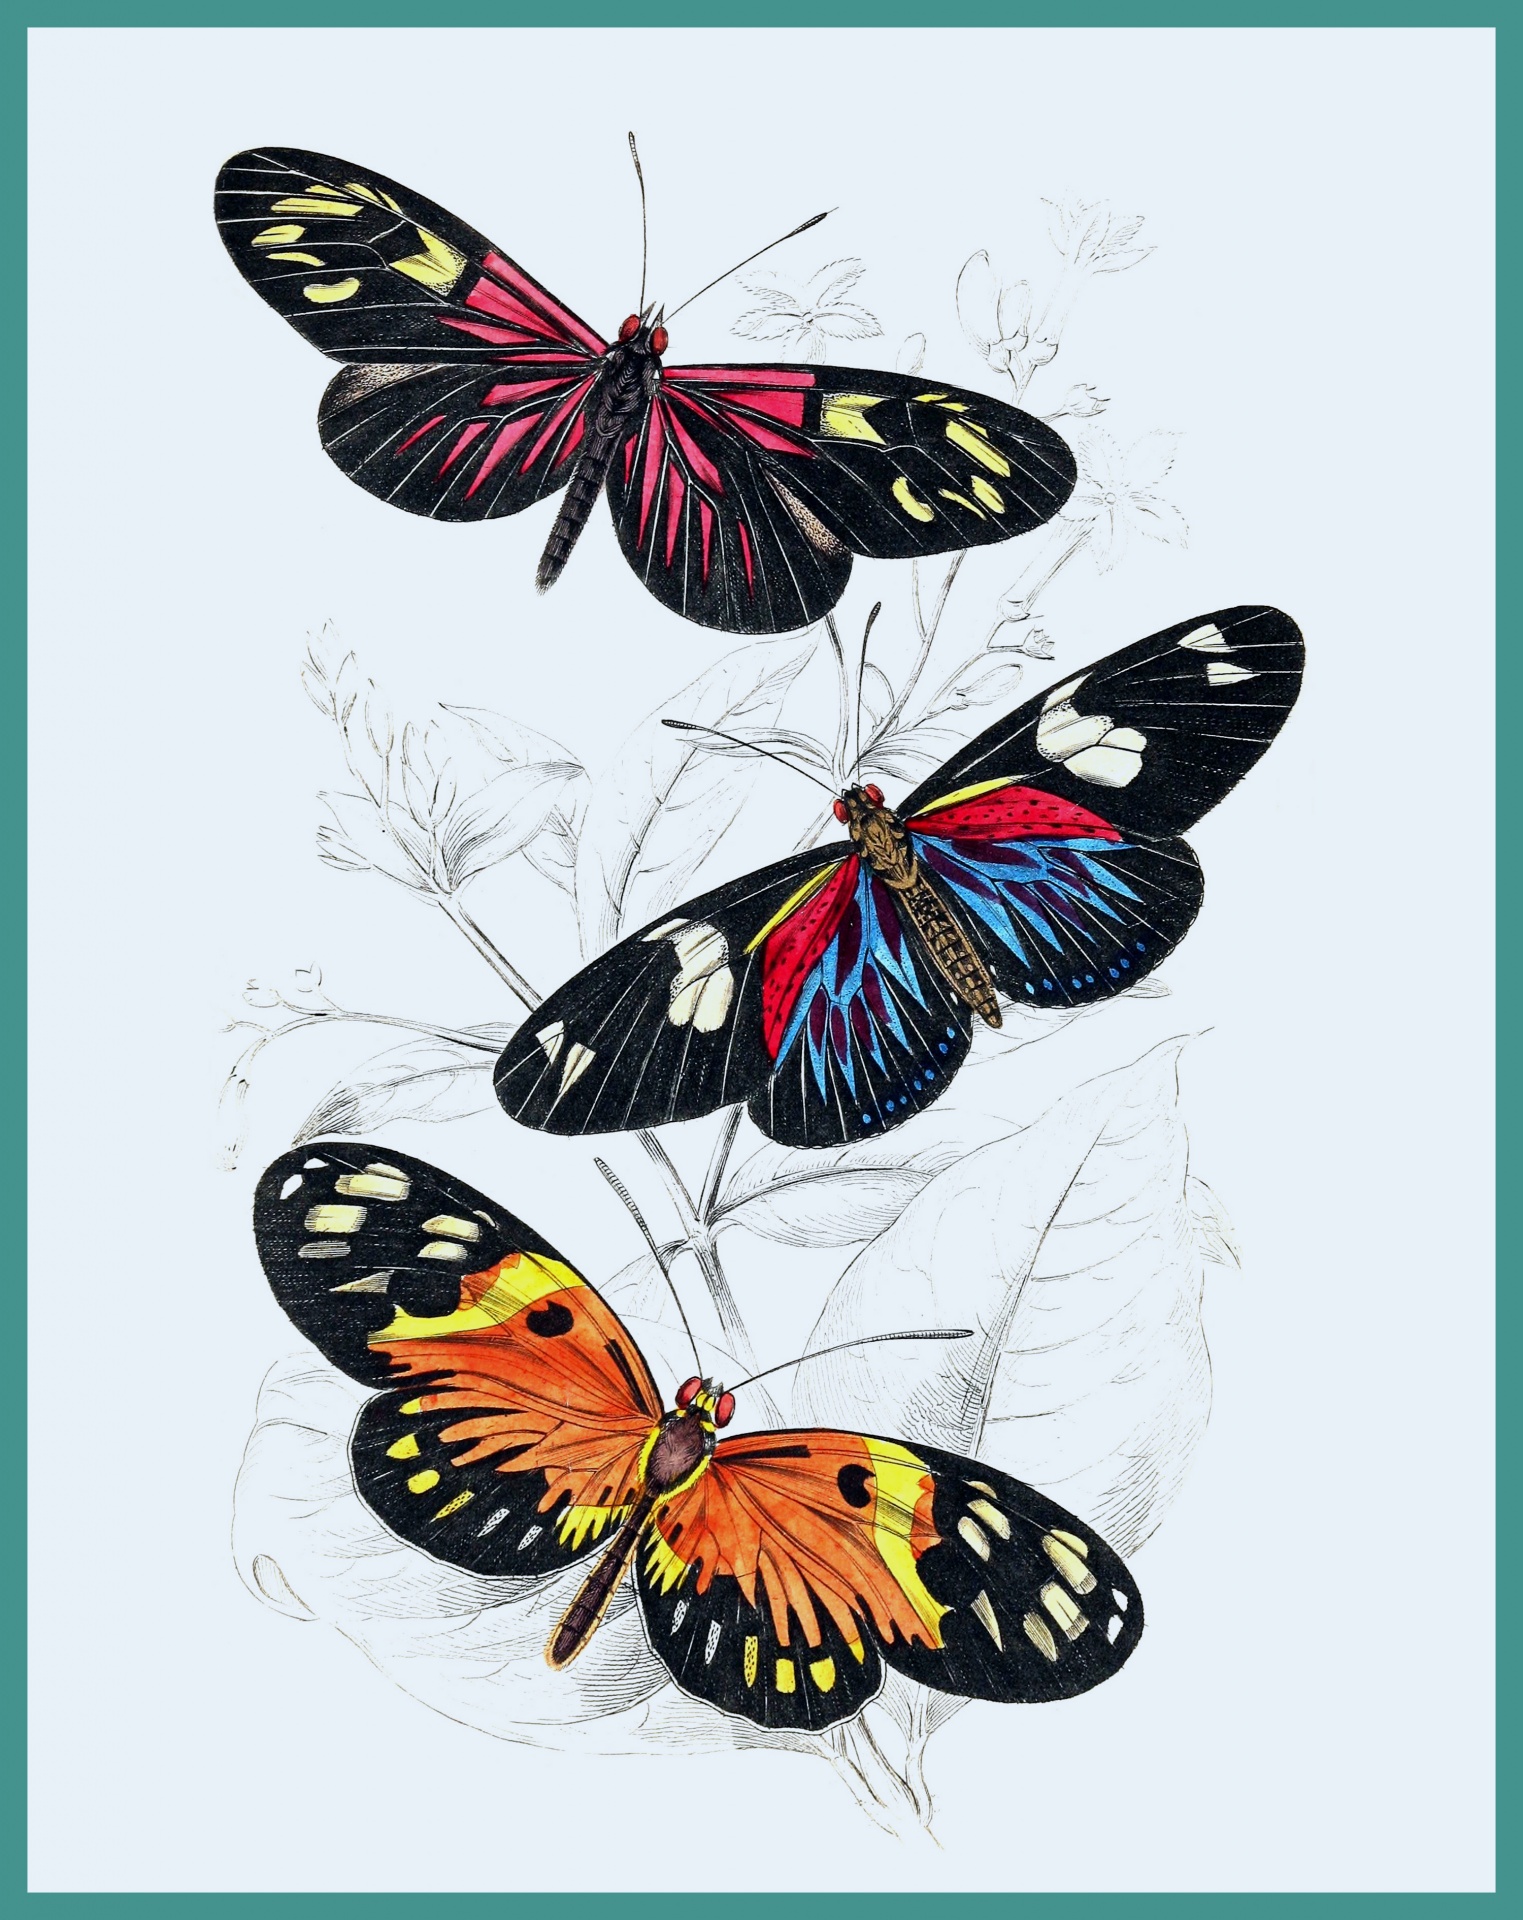 Stampa artistica di farfalle